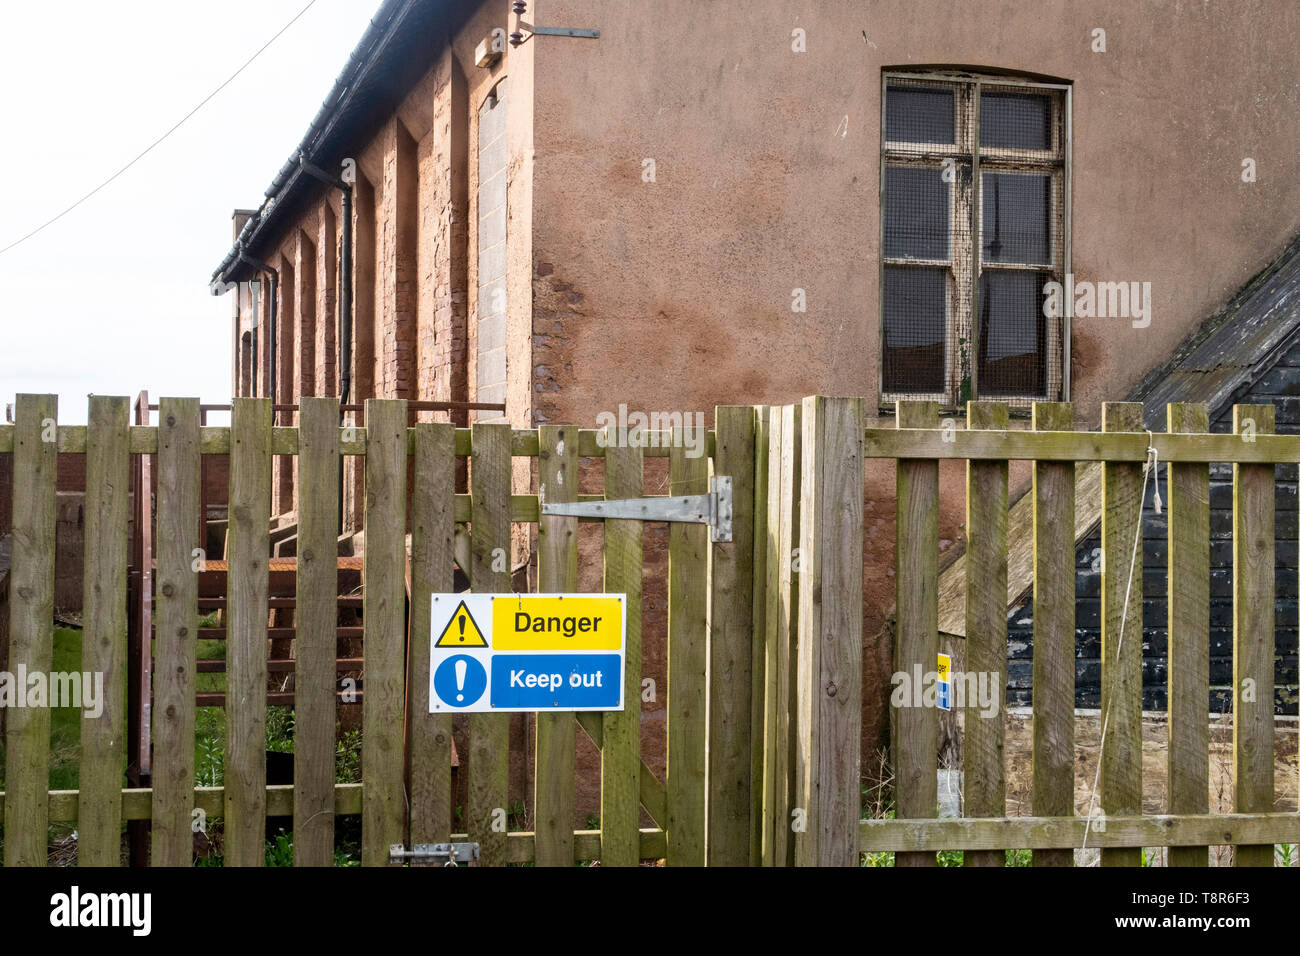 Gefahr, behalten Sie sich abmelden Hinweis außerhalb eines zerfallenden Gebäude, der Drill Hall in Honiton, Devon, Großbritannien Stockfoto